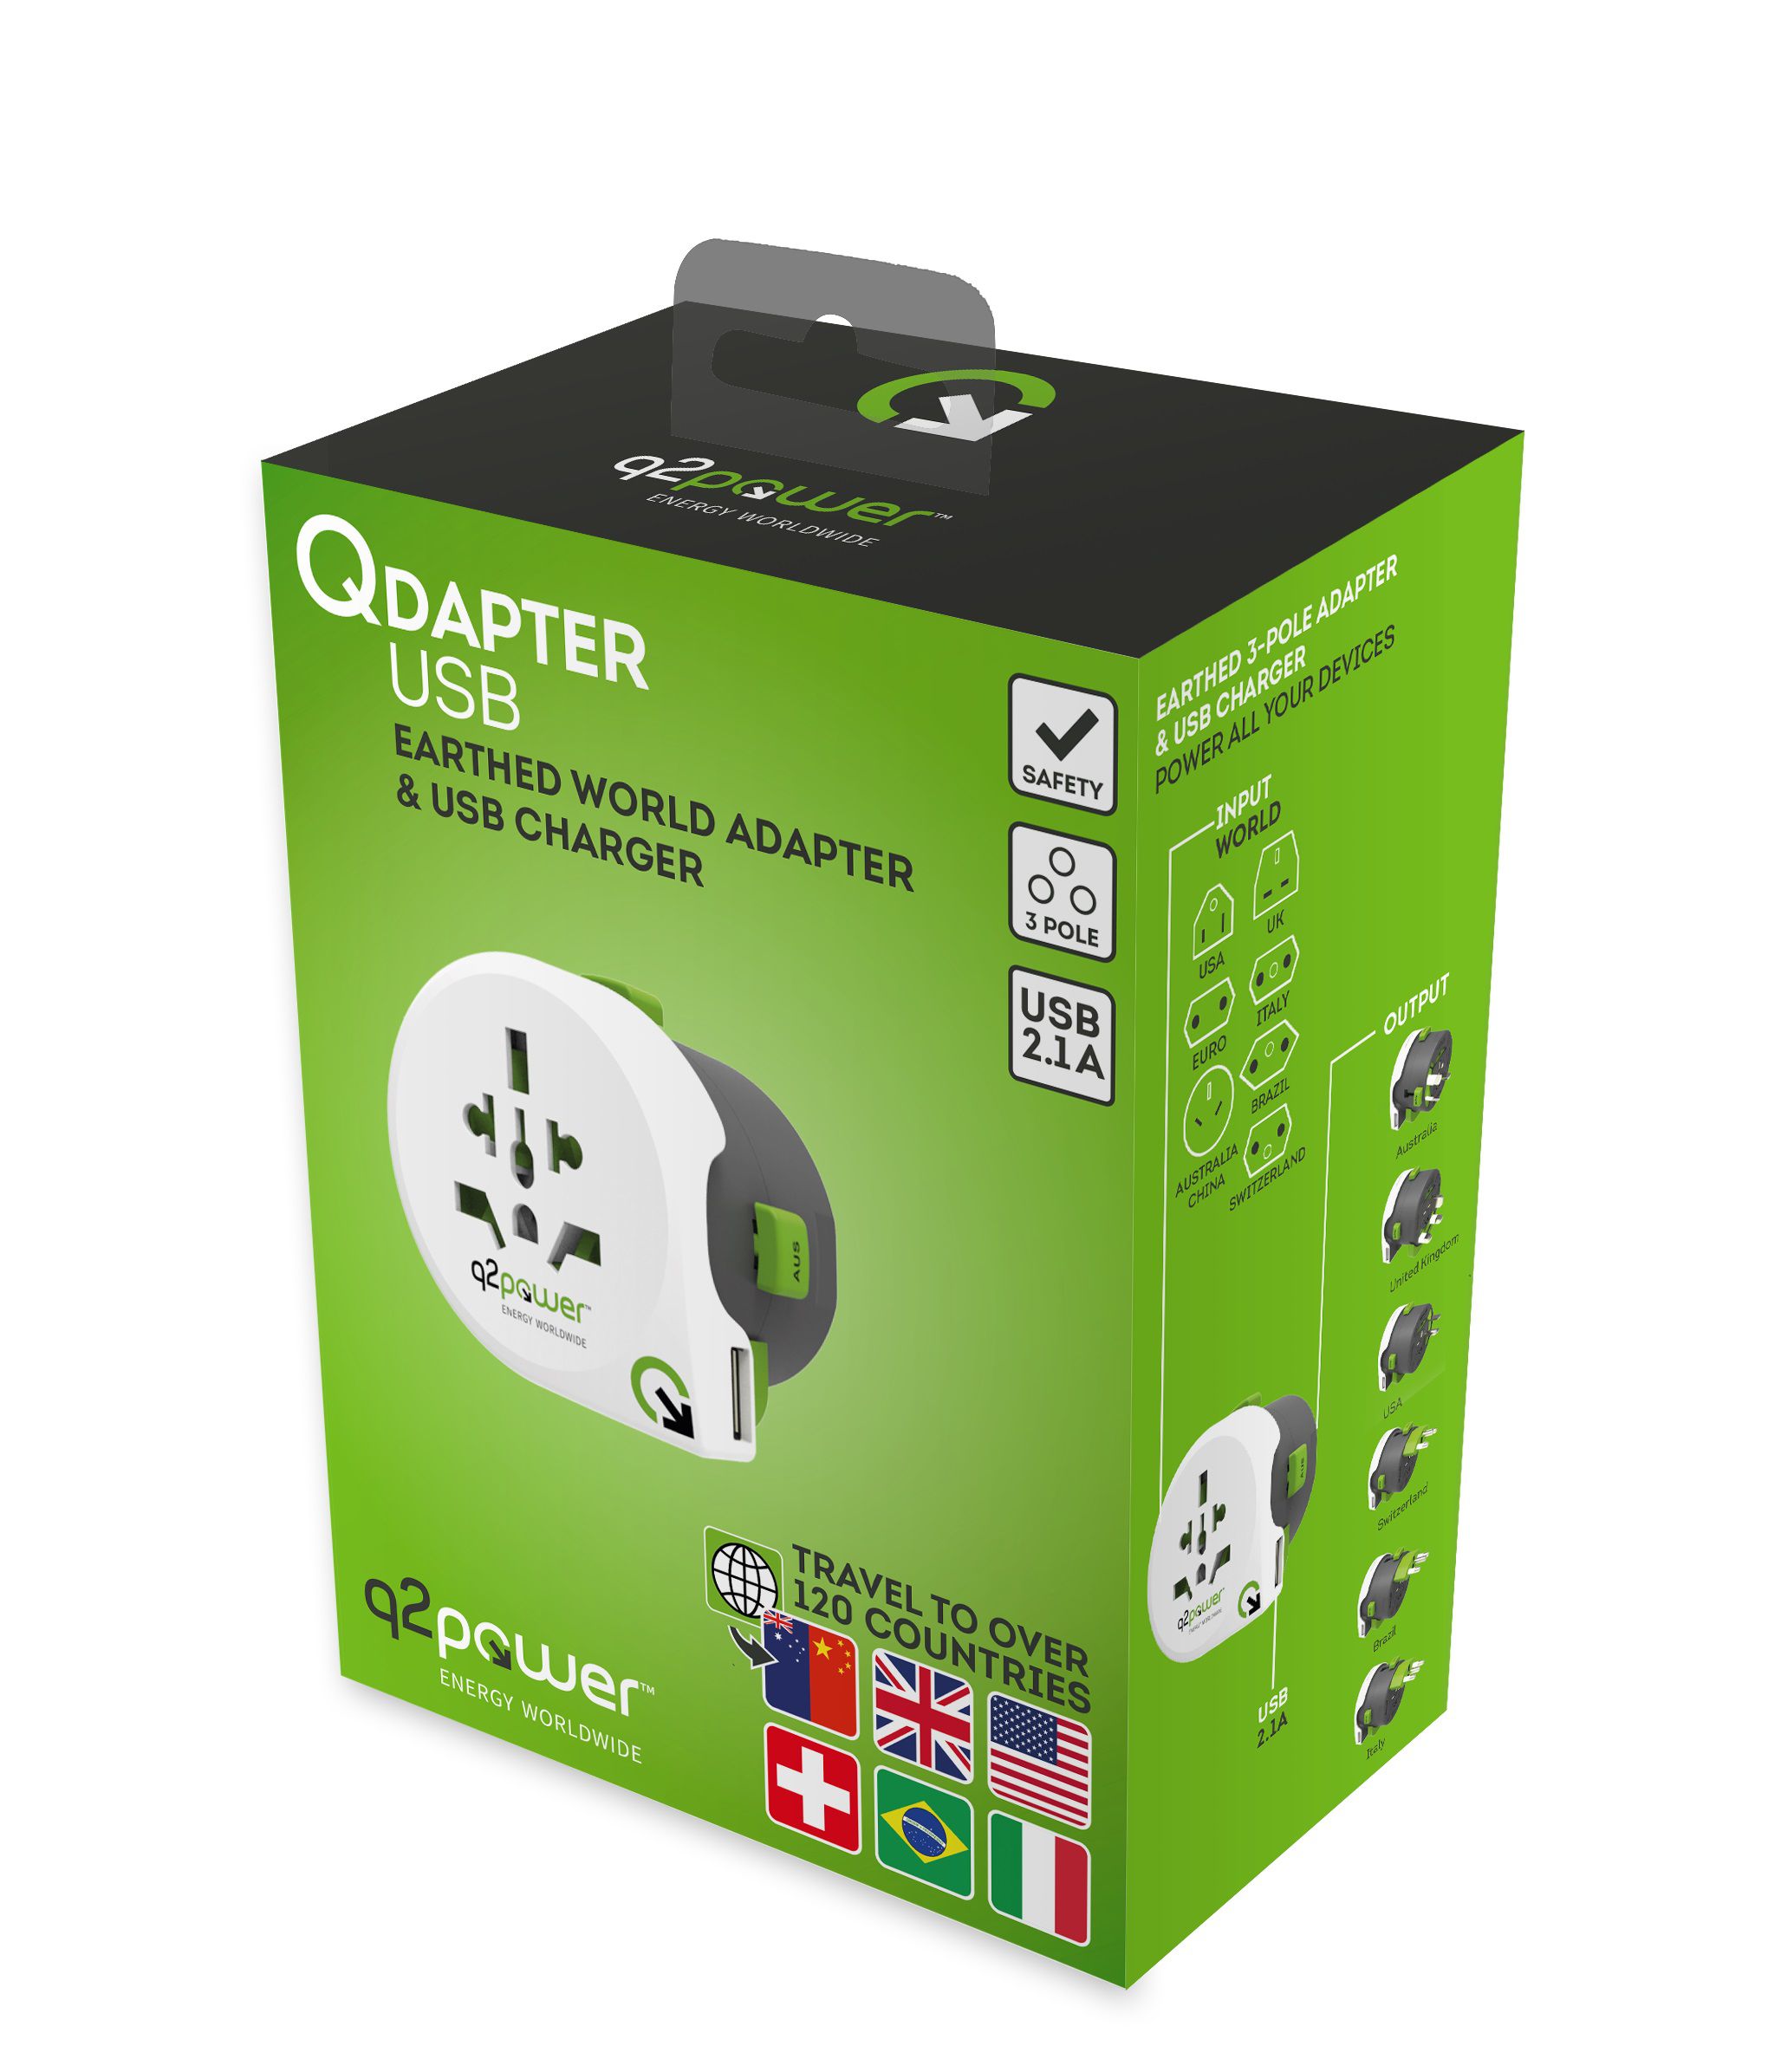 adattatori viaggio nel mondo QDAPTER con USB 2.1A